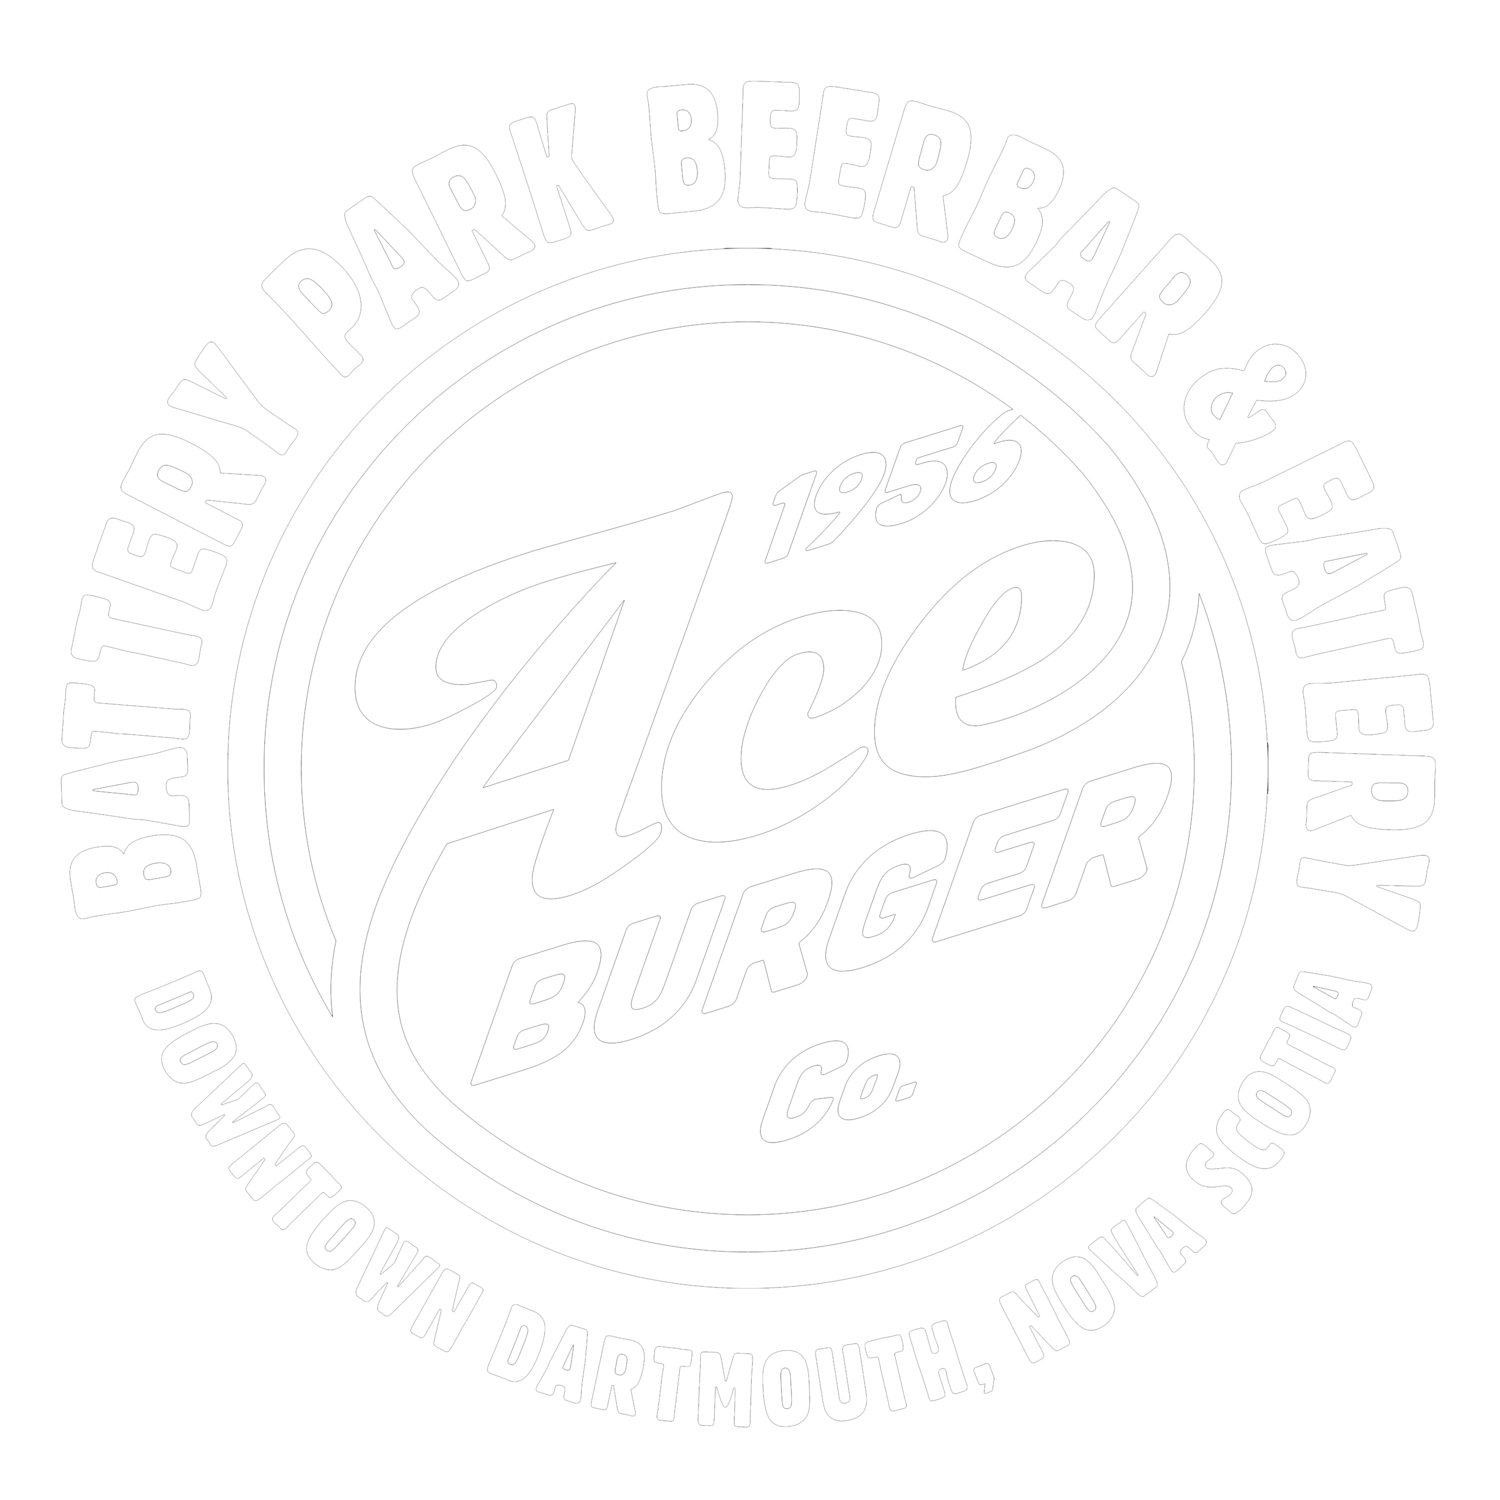 Ace Burger Company